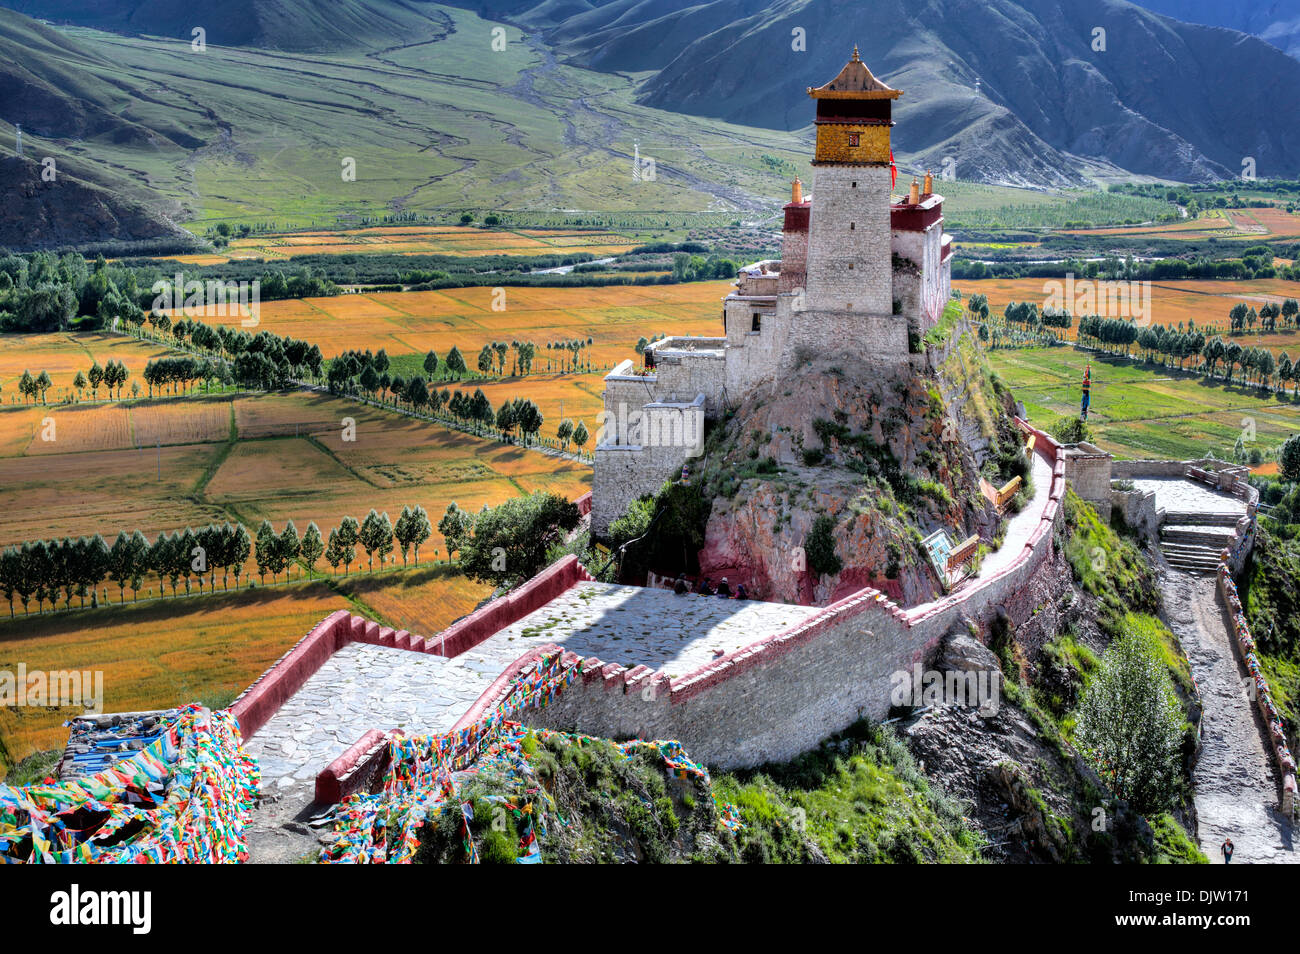 Yumbu Lakhang (Yungbulakang Palace), Lhoka (préfecture de Shannan), Tibet, Chine Banque D'Images